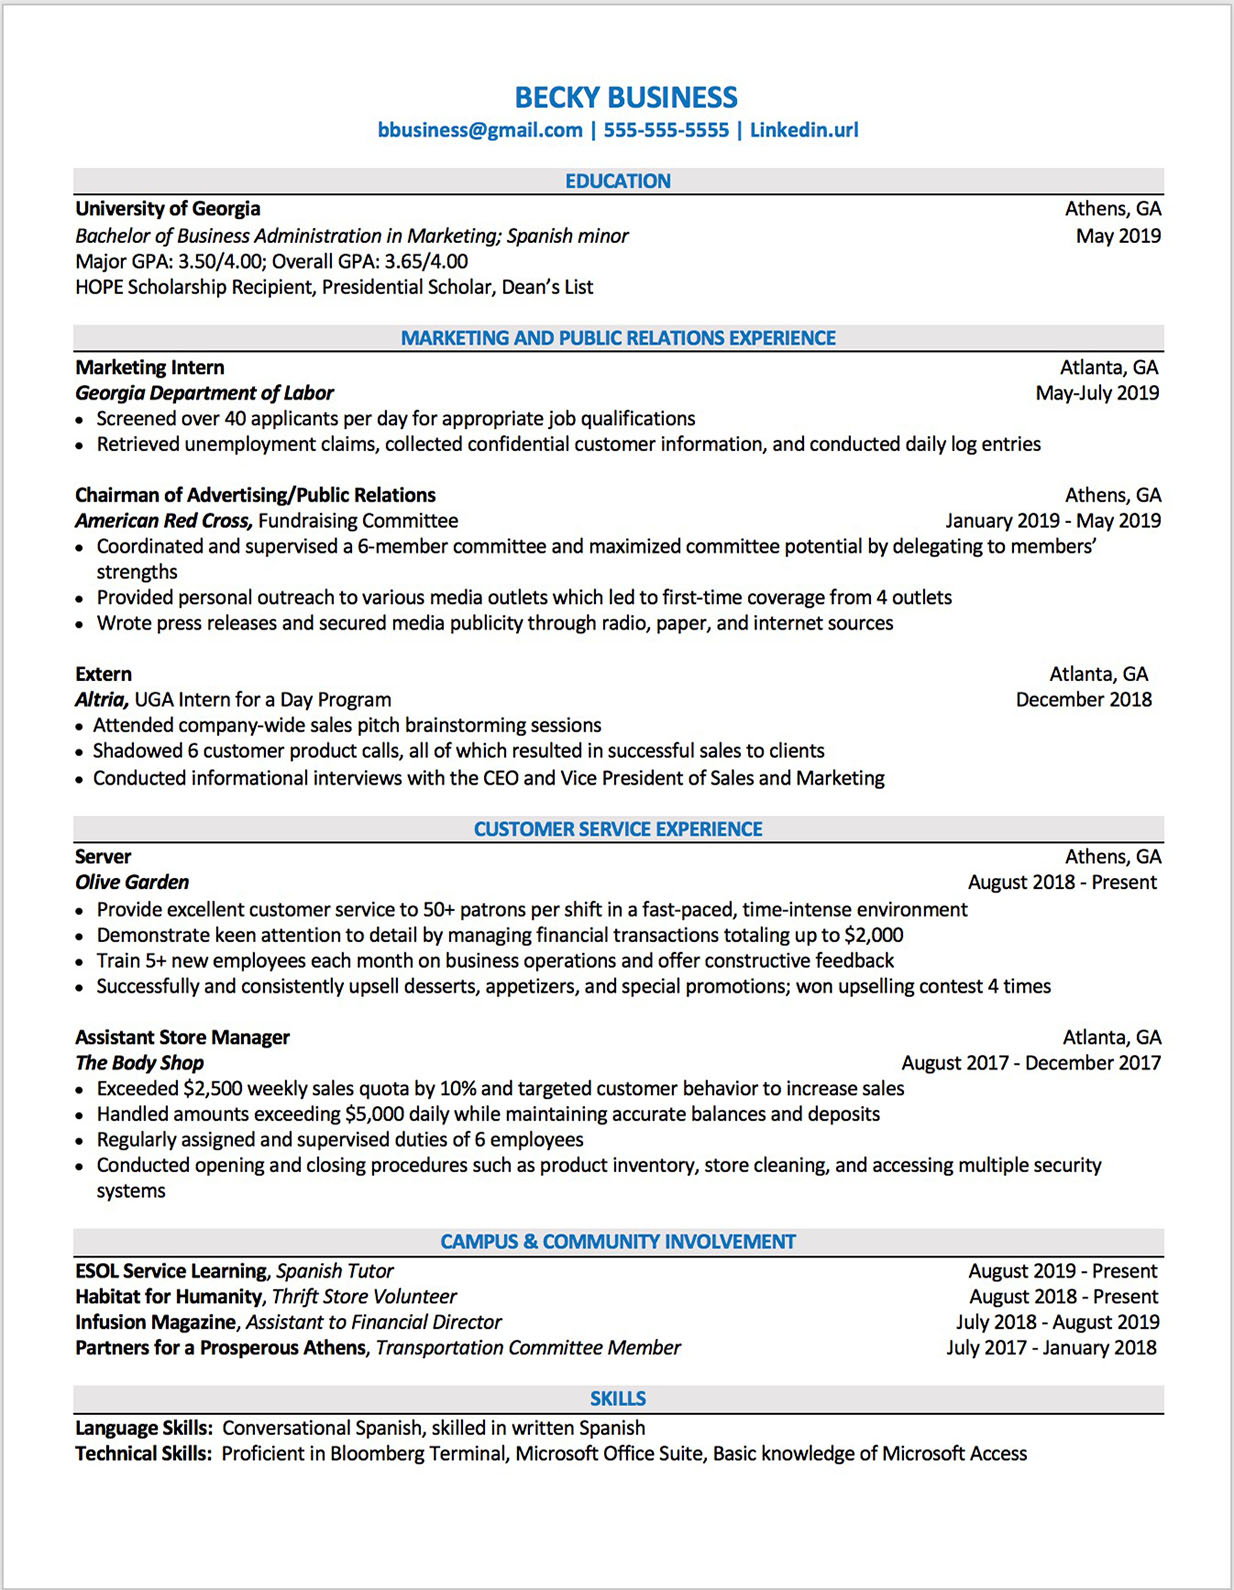 Recent graduate resume template